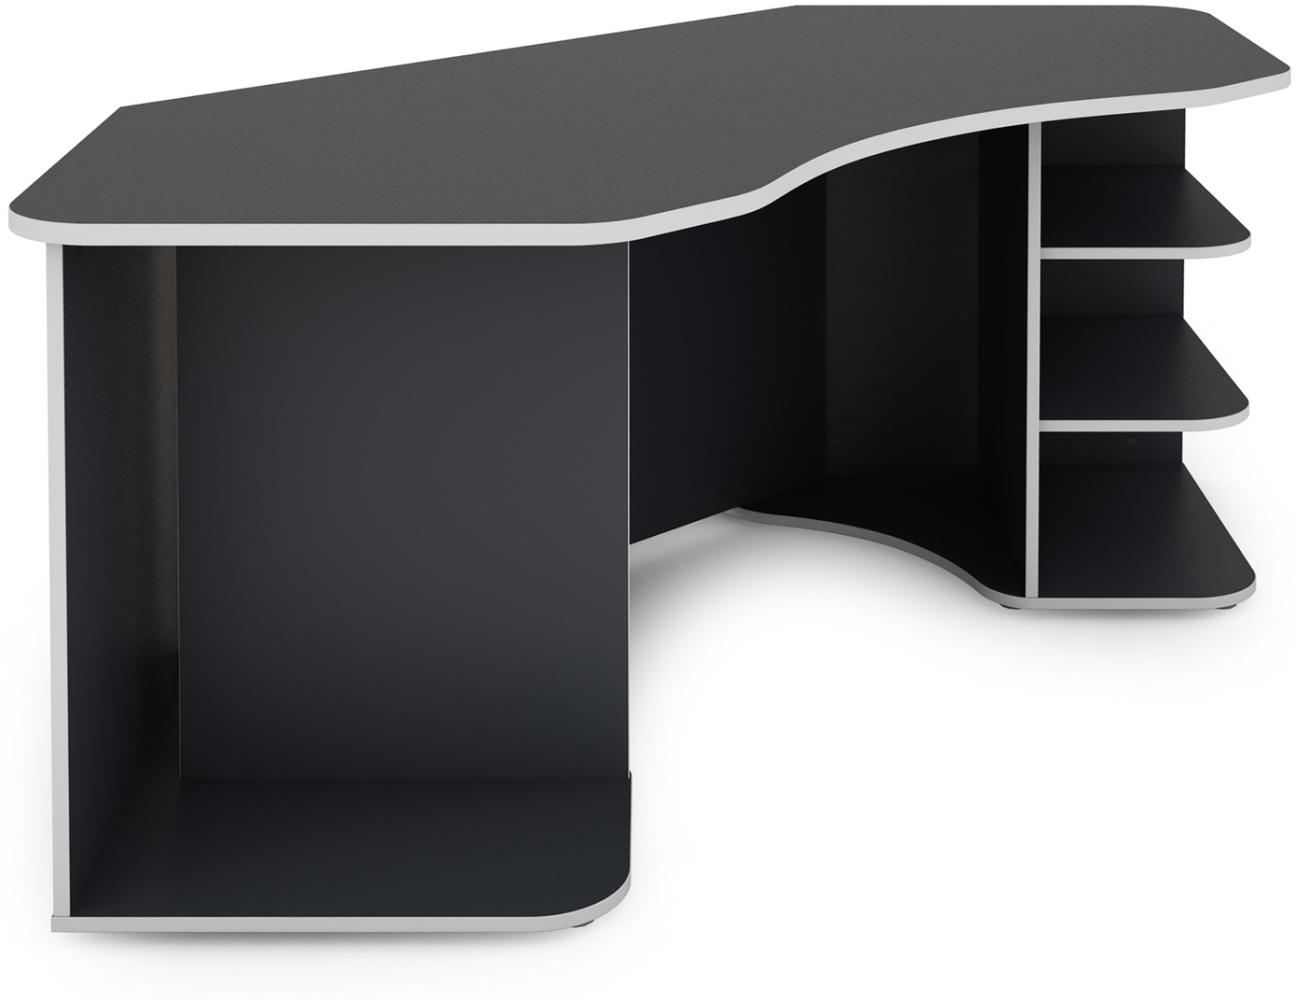 byLIVING Schreibtisch THANATOS / Gaming-Tisch in Anthrazit mit Kanten in Weiß / Eck-Schreibtisch mit viel Stauraum und XXL Tischplatte / Computer-Tisch / PC / Arbeits-Tisch / 198x76x85cm (BxHxT) Bild 1